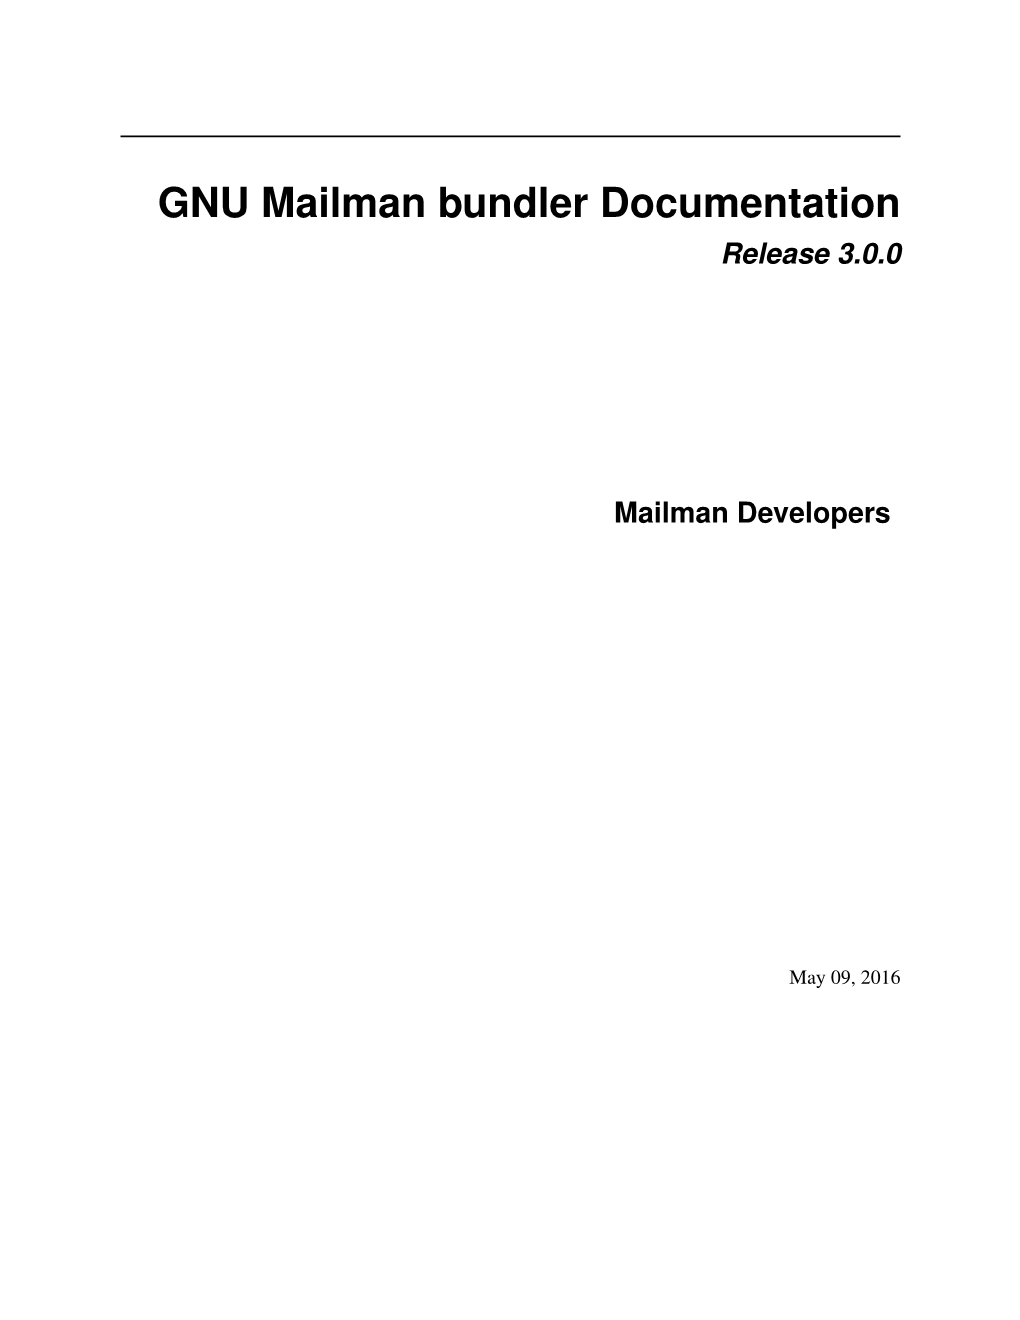 GNU Mailman Bundler Documentation Release 3.0.0